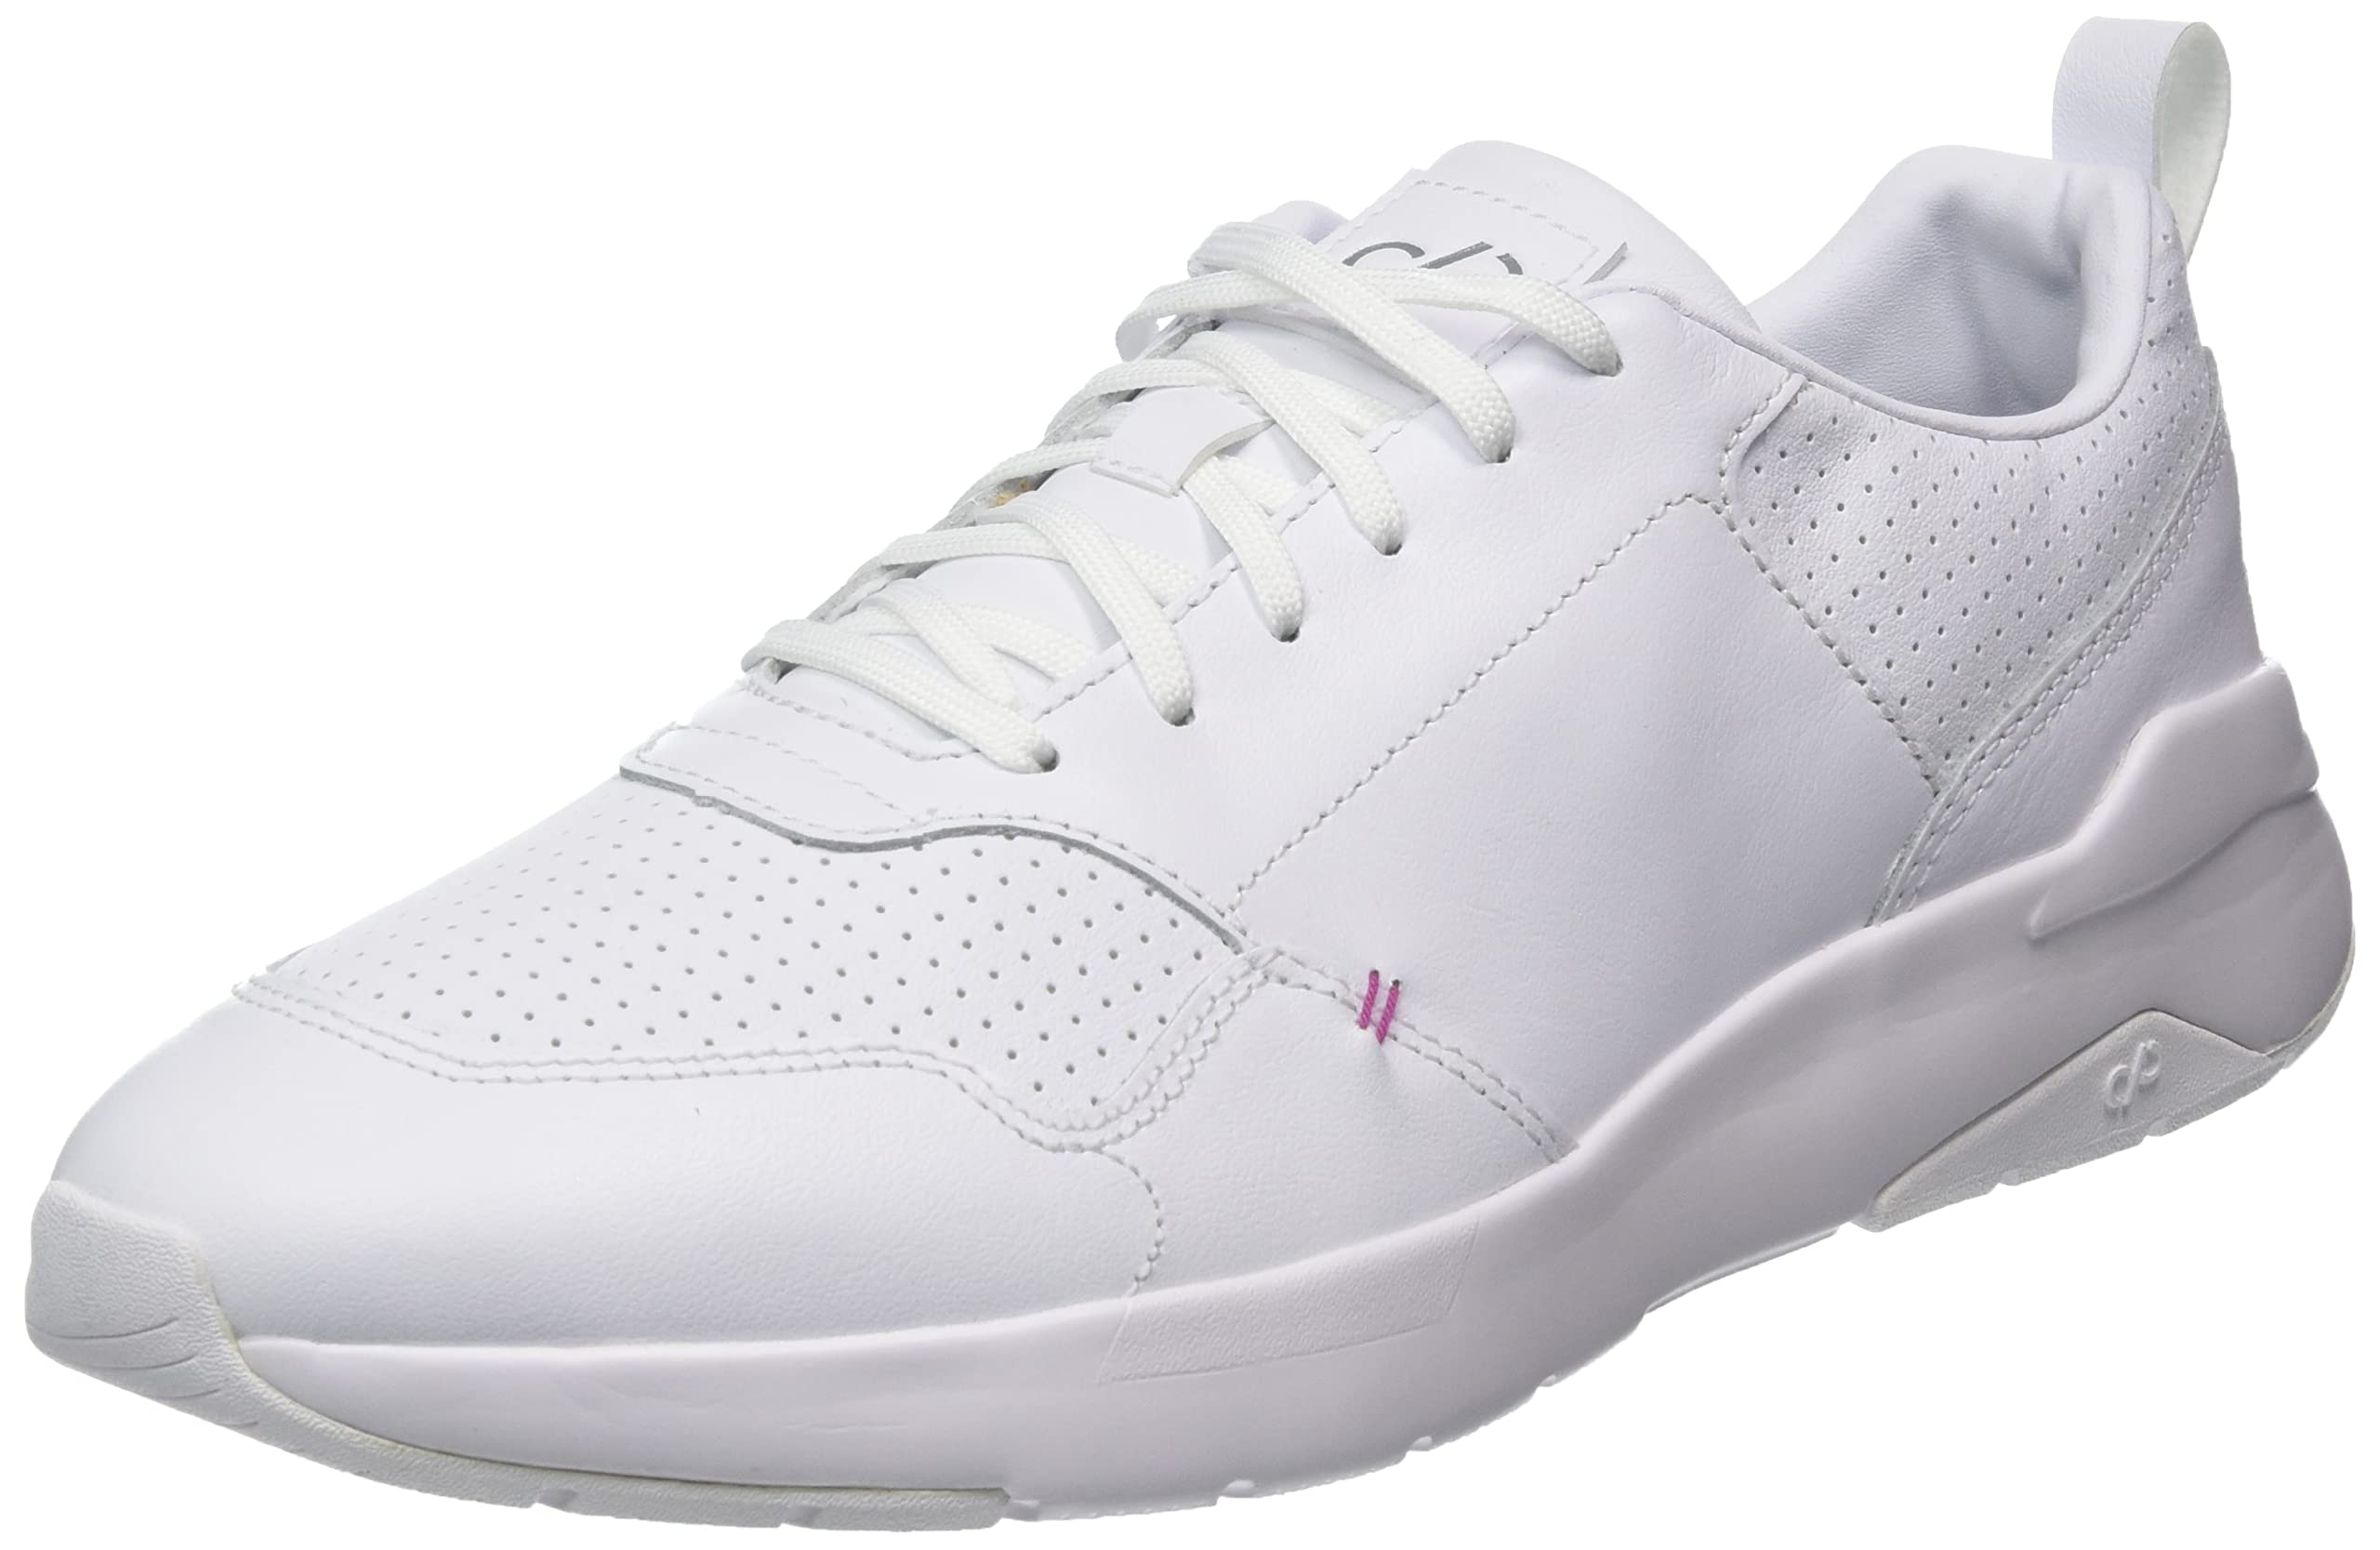 Care of by PUMA 372888, Damen Sneaker, Weiß (White White), 37 EU (4 UK)